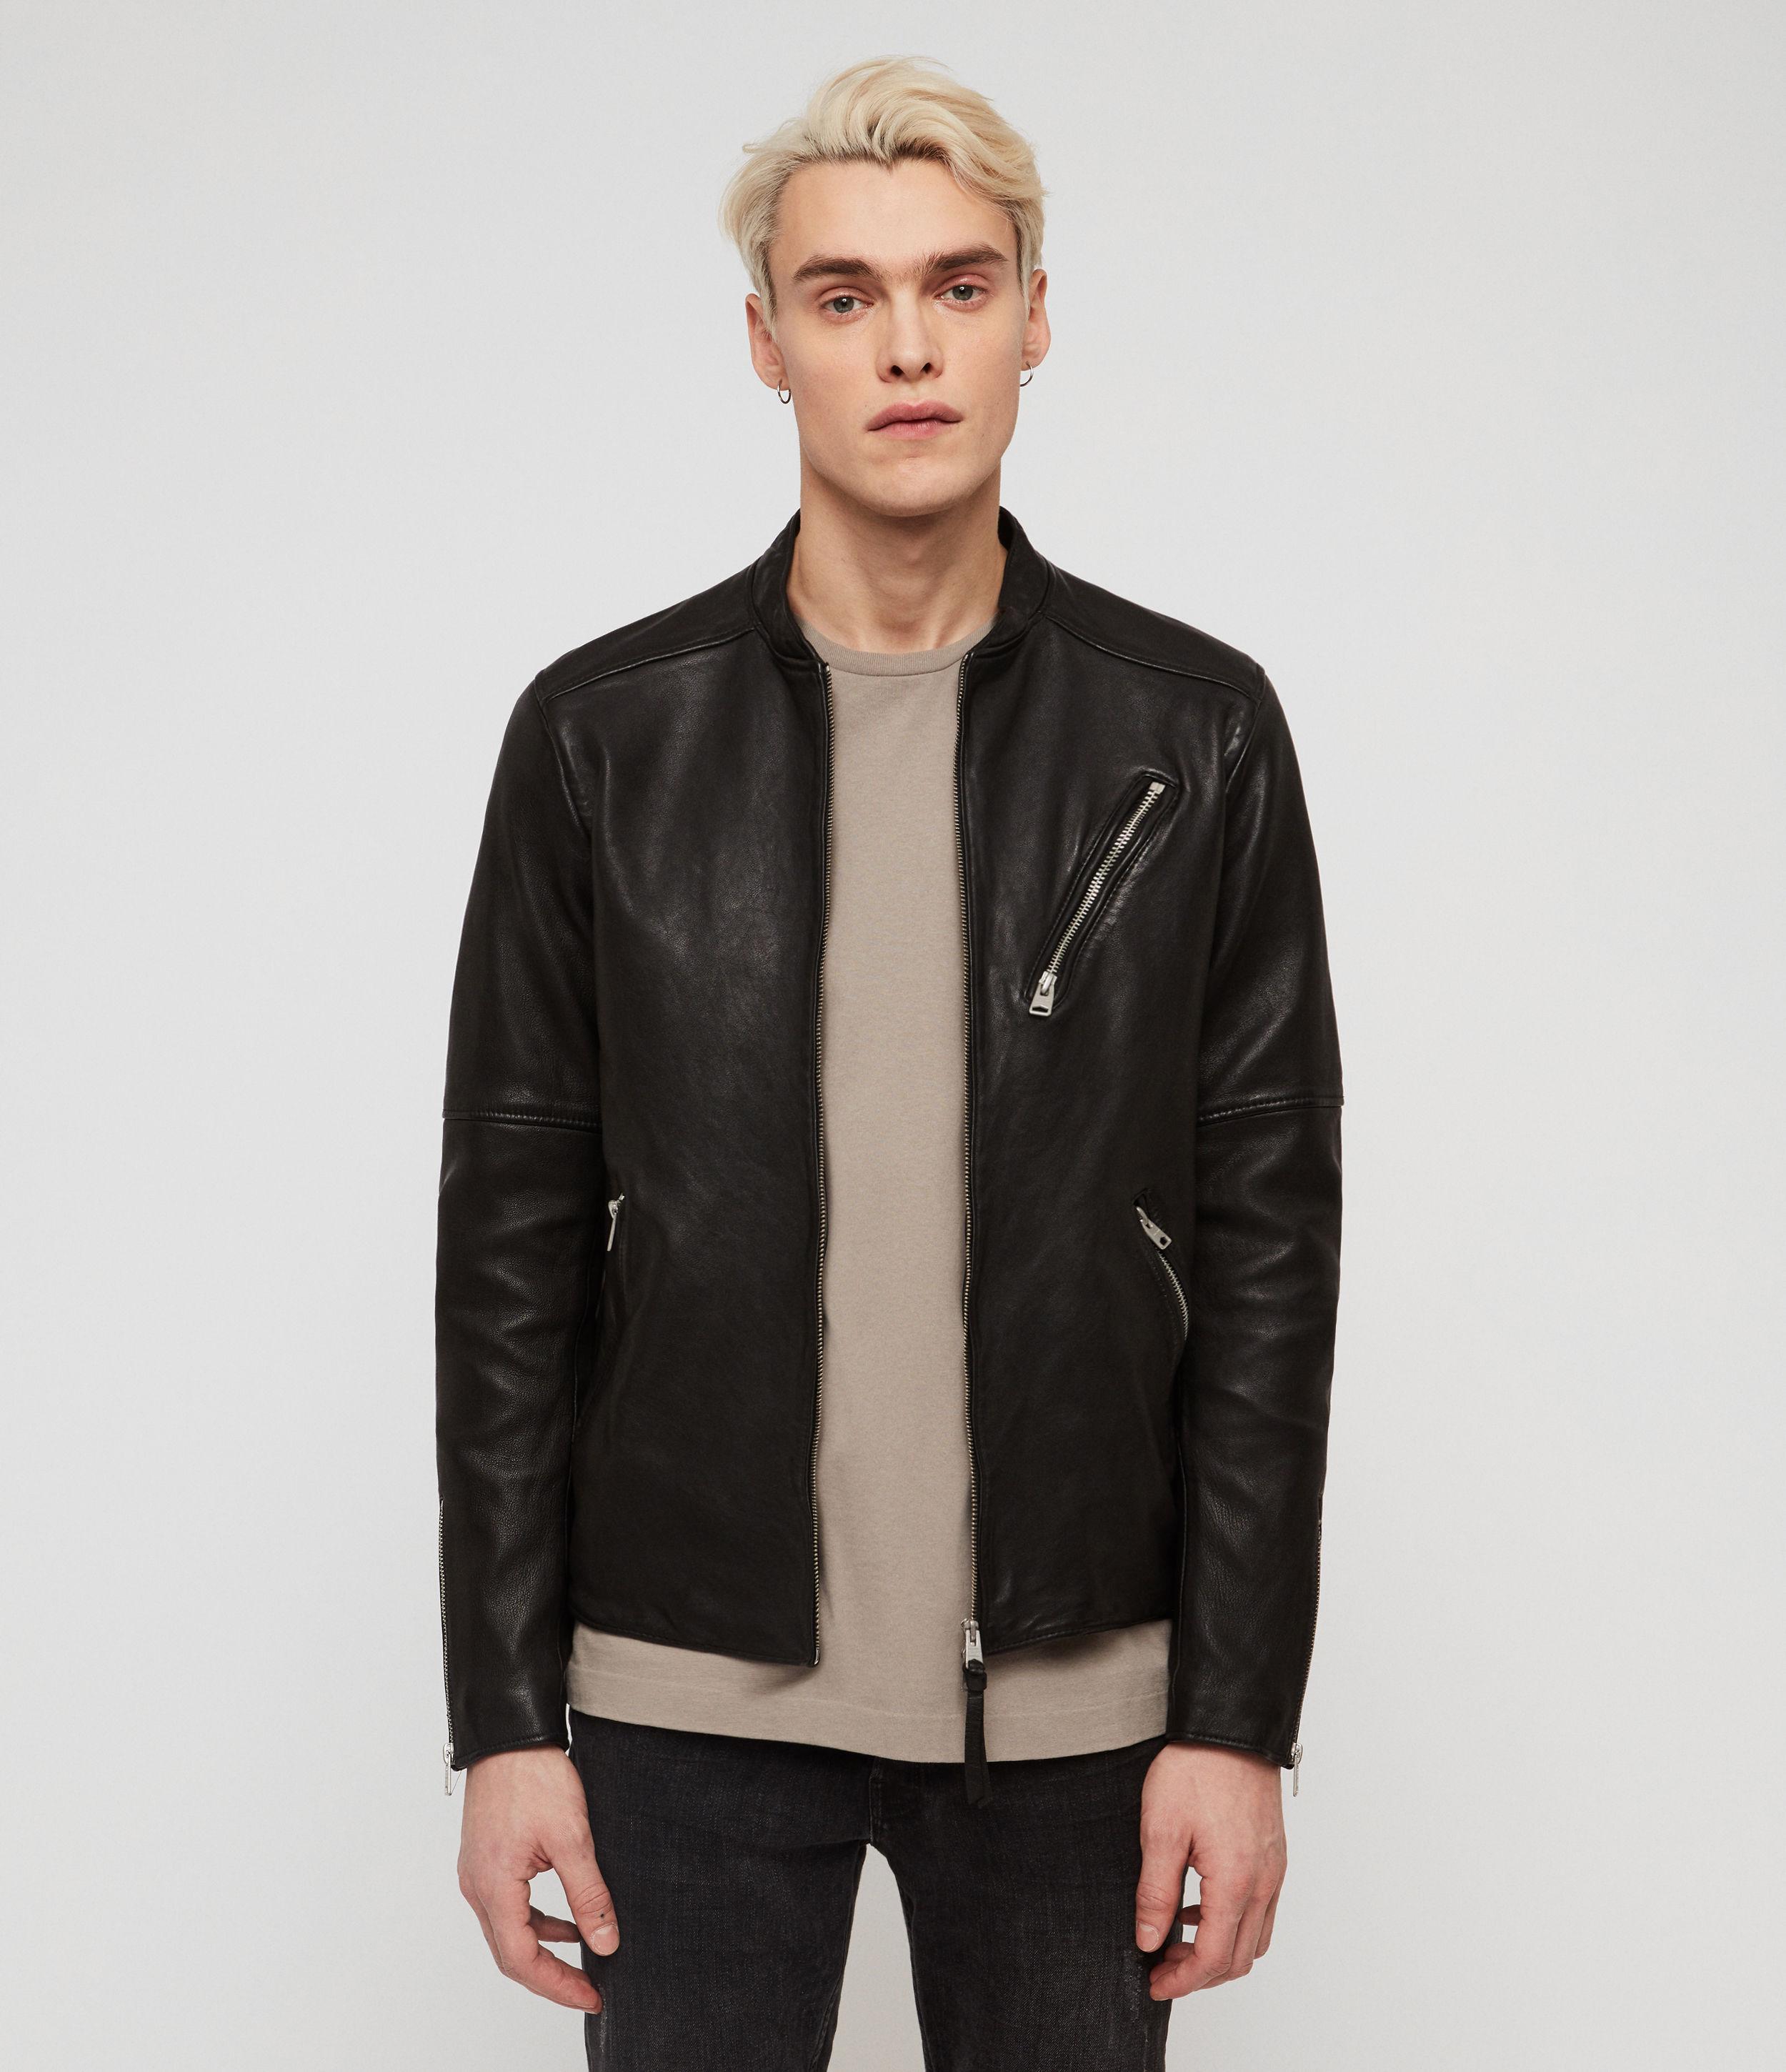 AllSaints Holbrooke Leather Jacket in Black for Men - Lyst